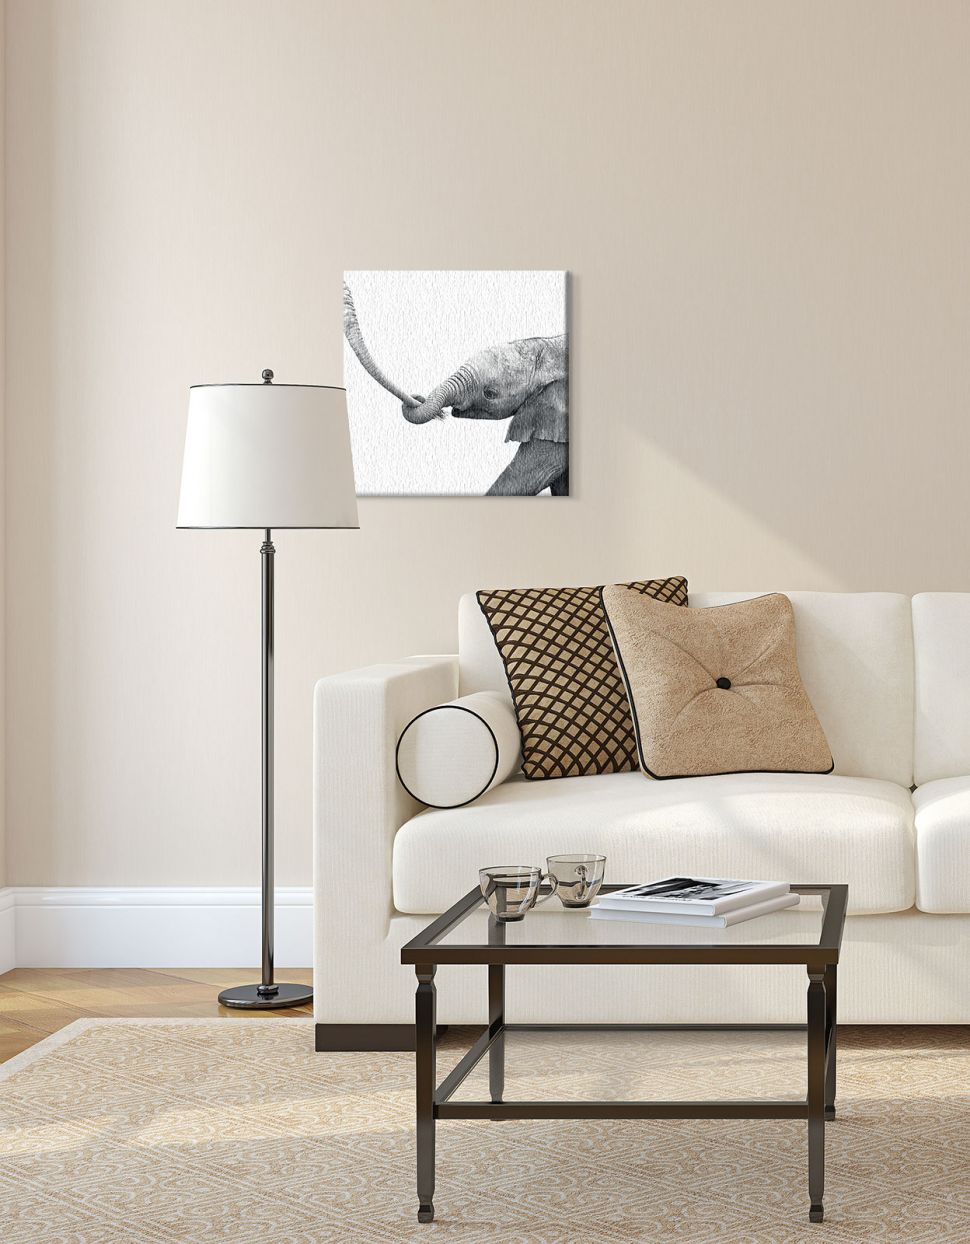 Obraz na płótnie z małym słonikiem powieszony w salonie nad kanapą